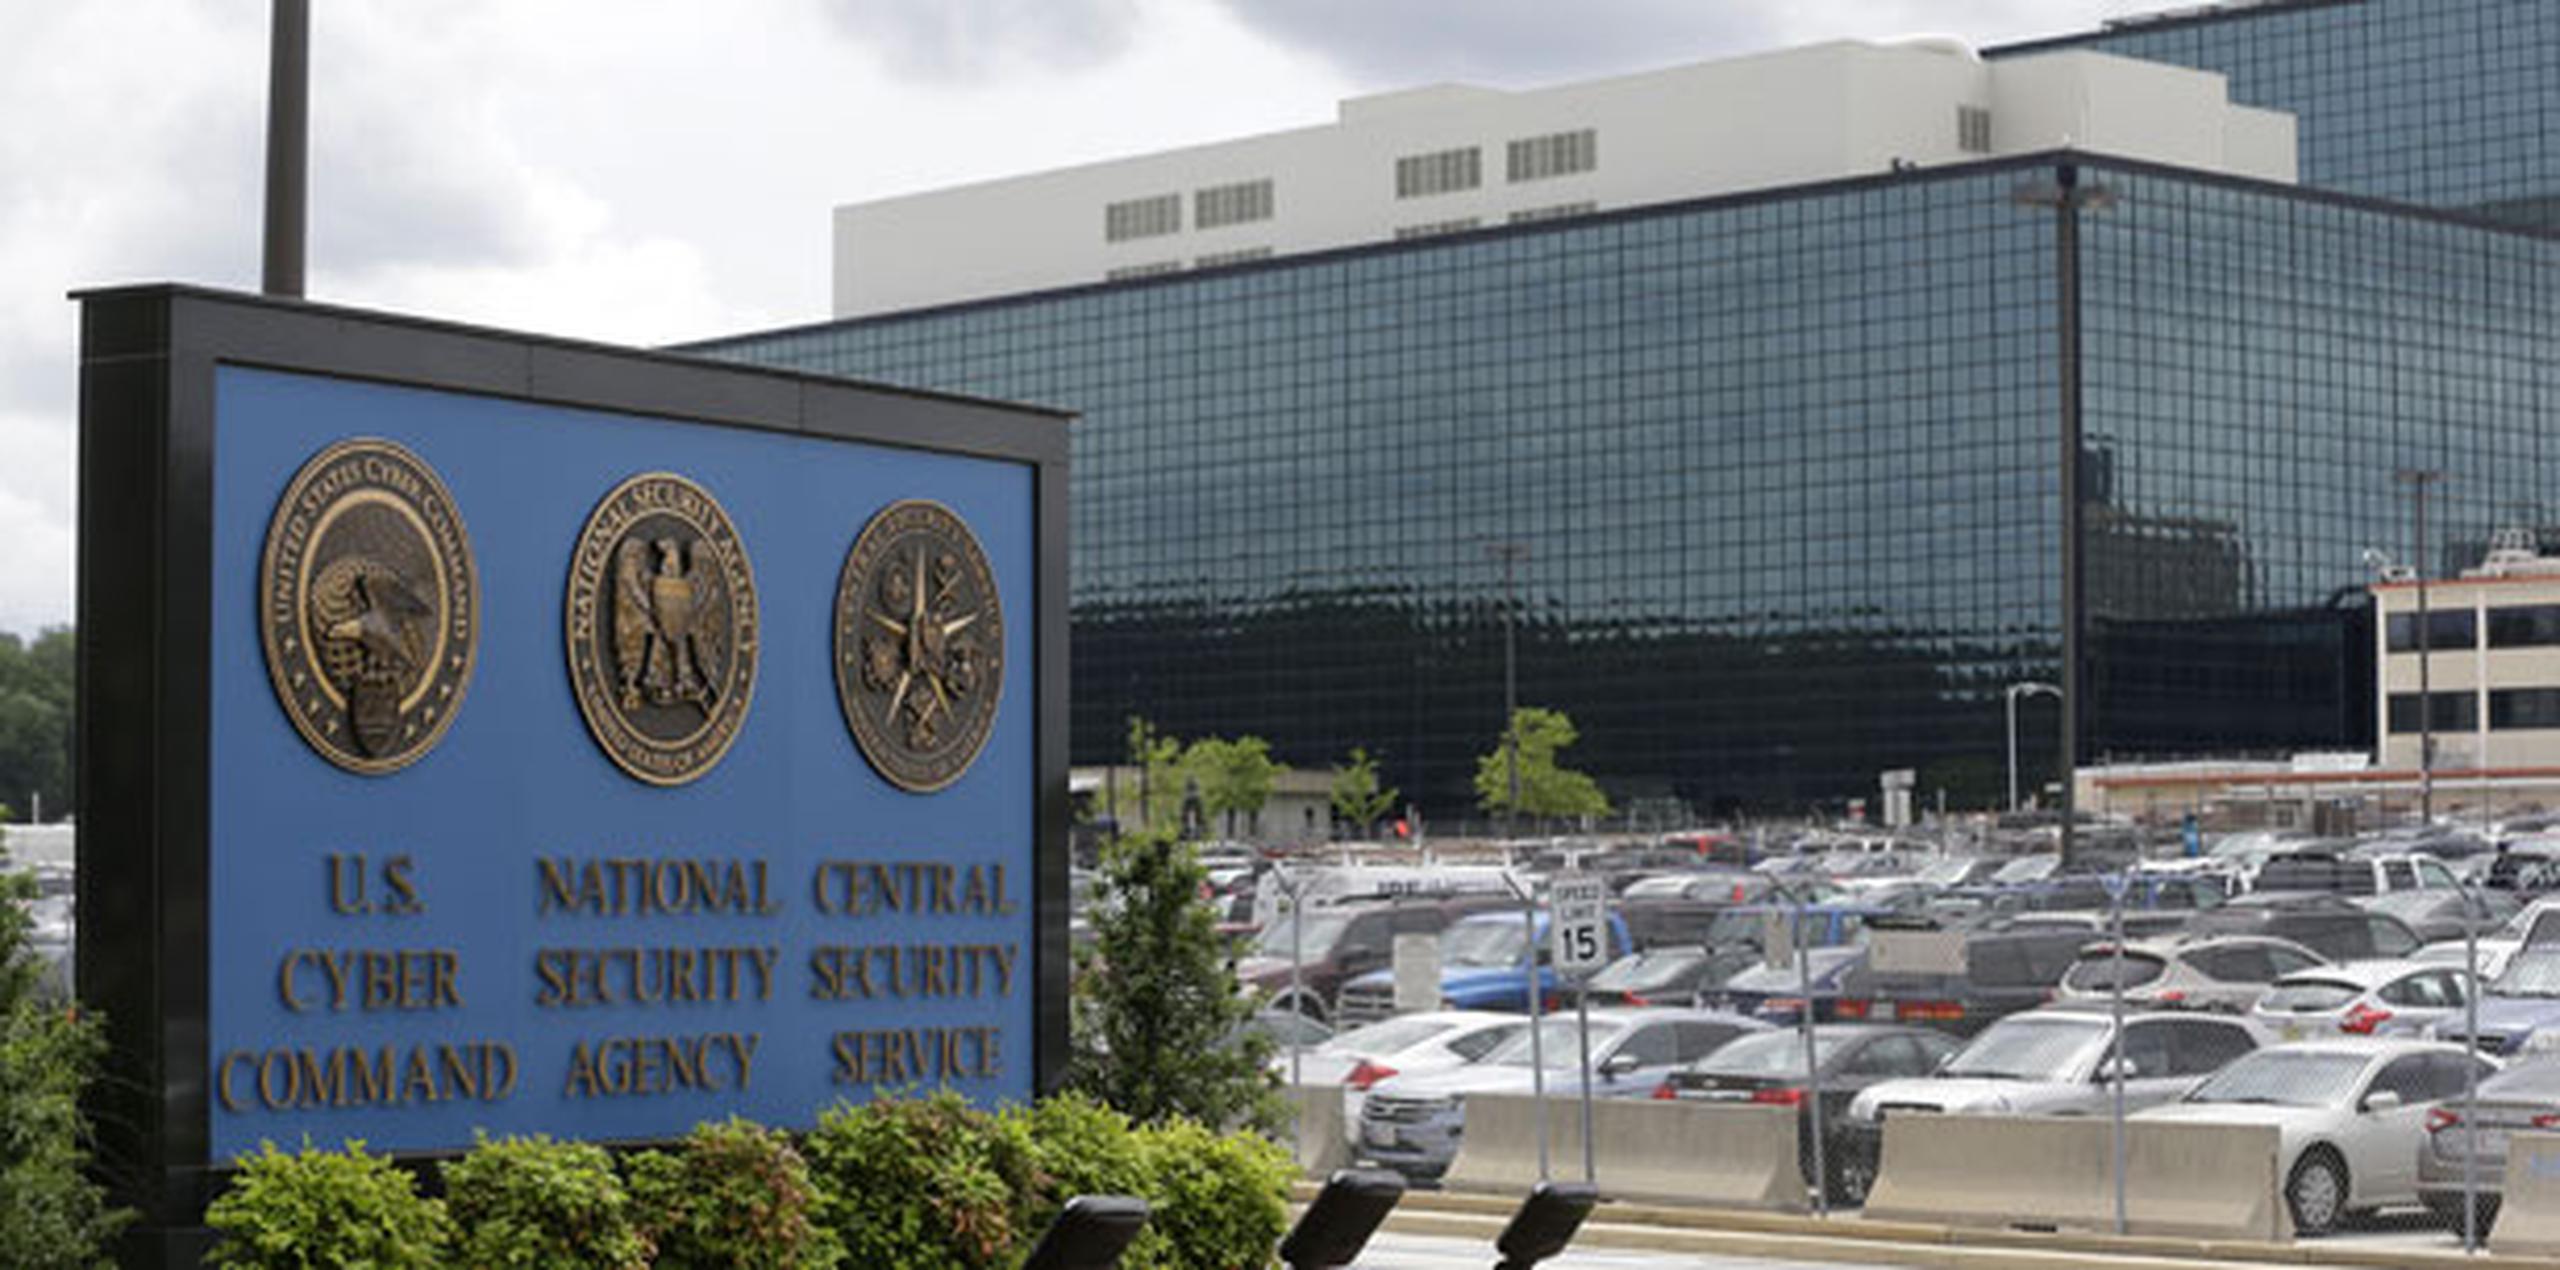 La presentación de este informe se produce después de que la NSA anunciara el pasado mes de junio que estaba borrando millones de grabaciones telefónicas realizadas por las compañías de telecomunicaciones y que la institución había estado adquiriendo desde 2015. (AP)